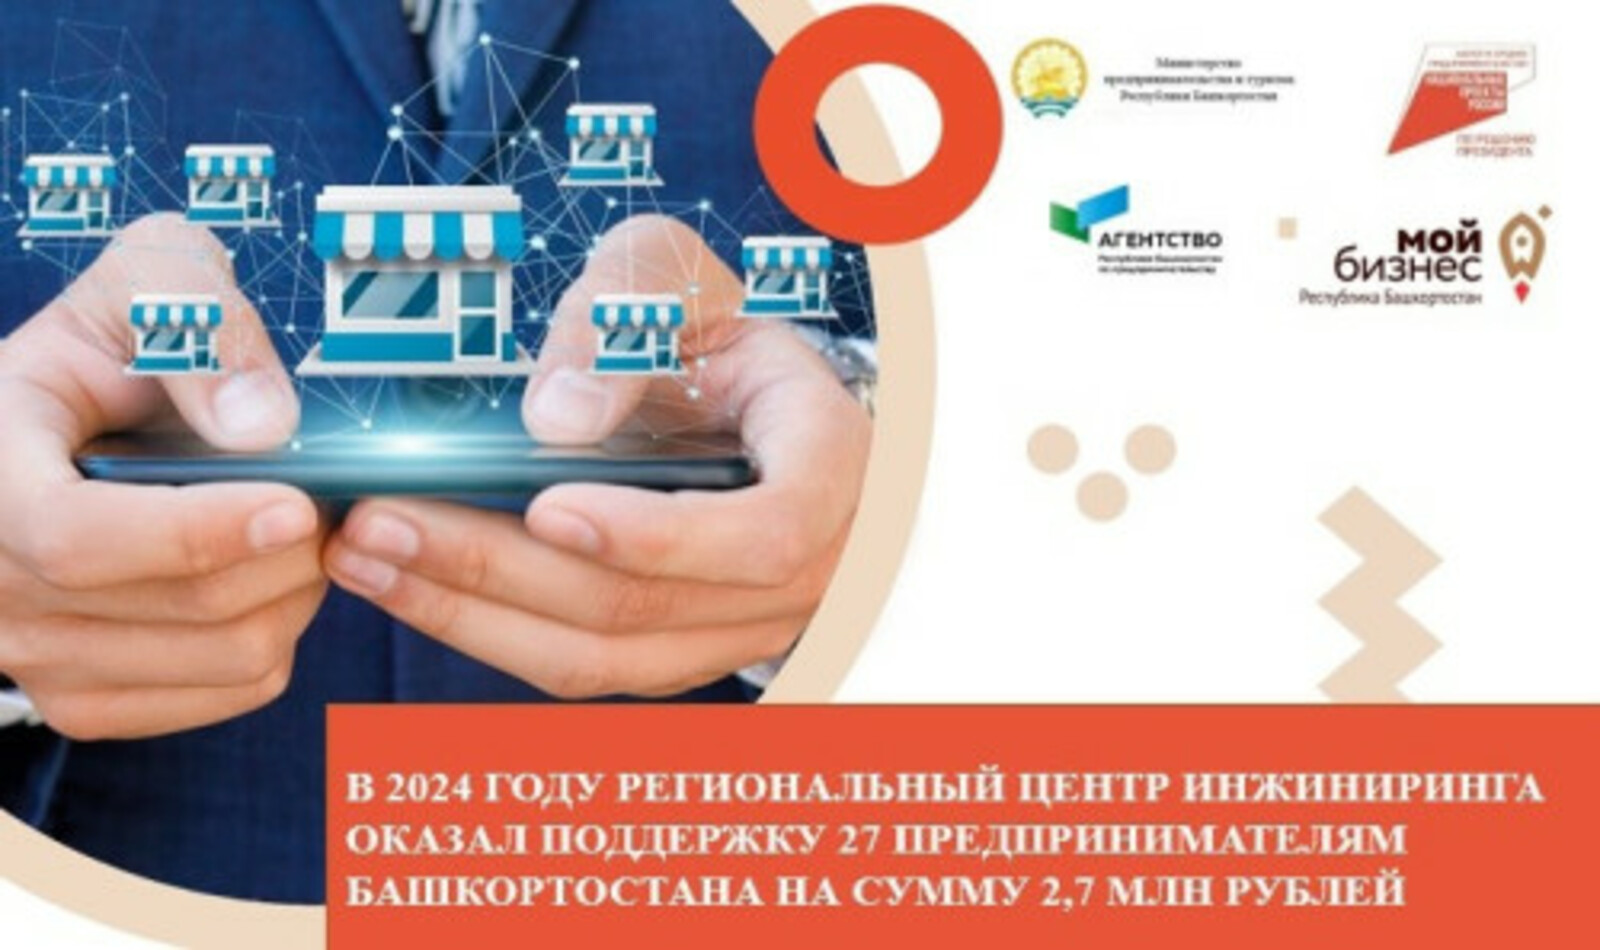 В 2024 году Региональный центр инжиниринга оказал поддержку 27 предпринимателям Башкортостана на сумму 2,7 млн рублей